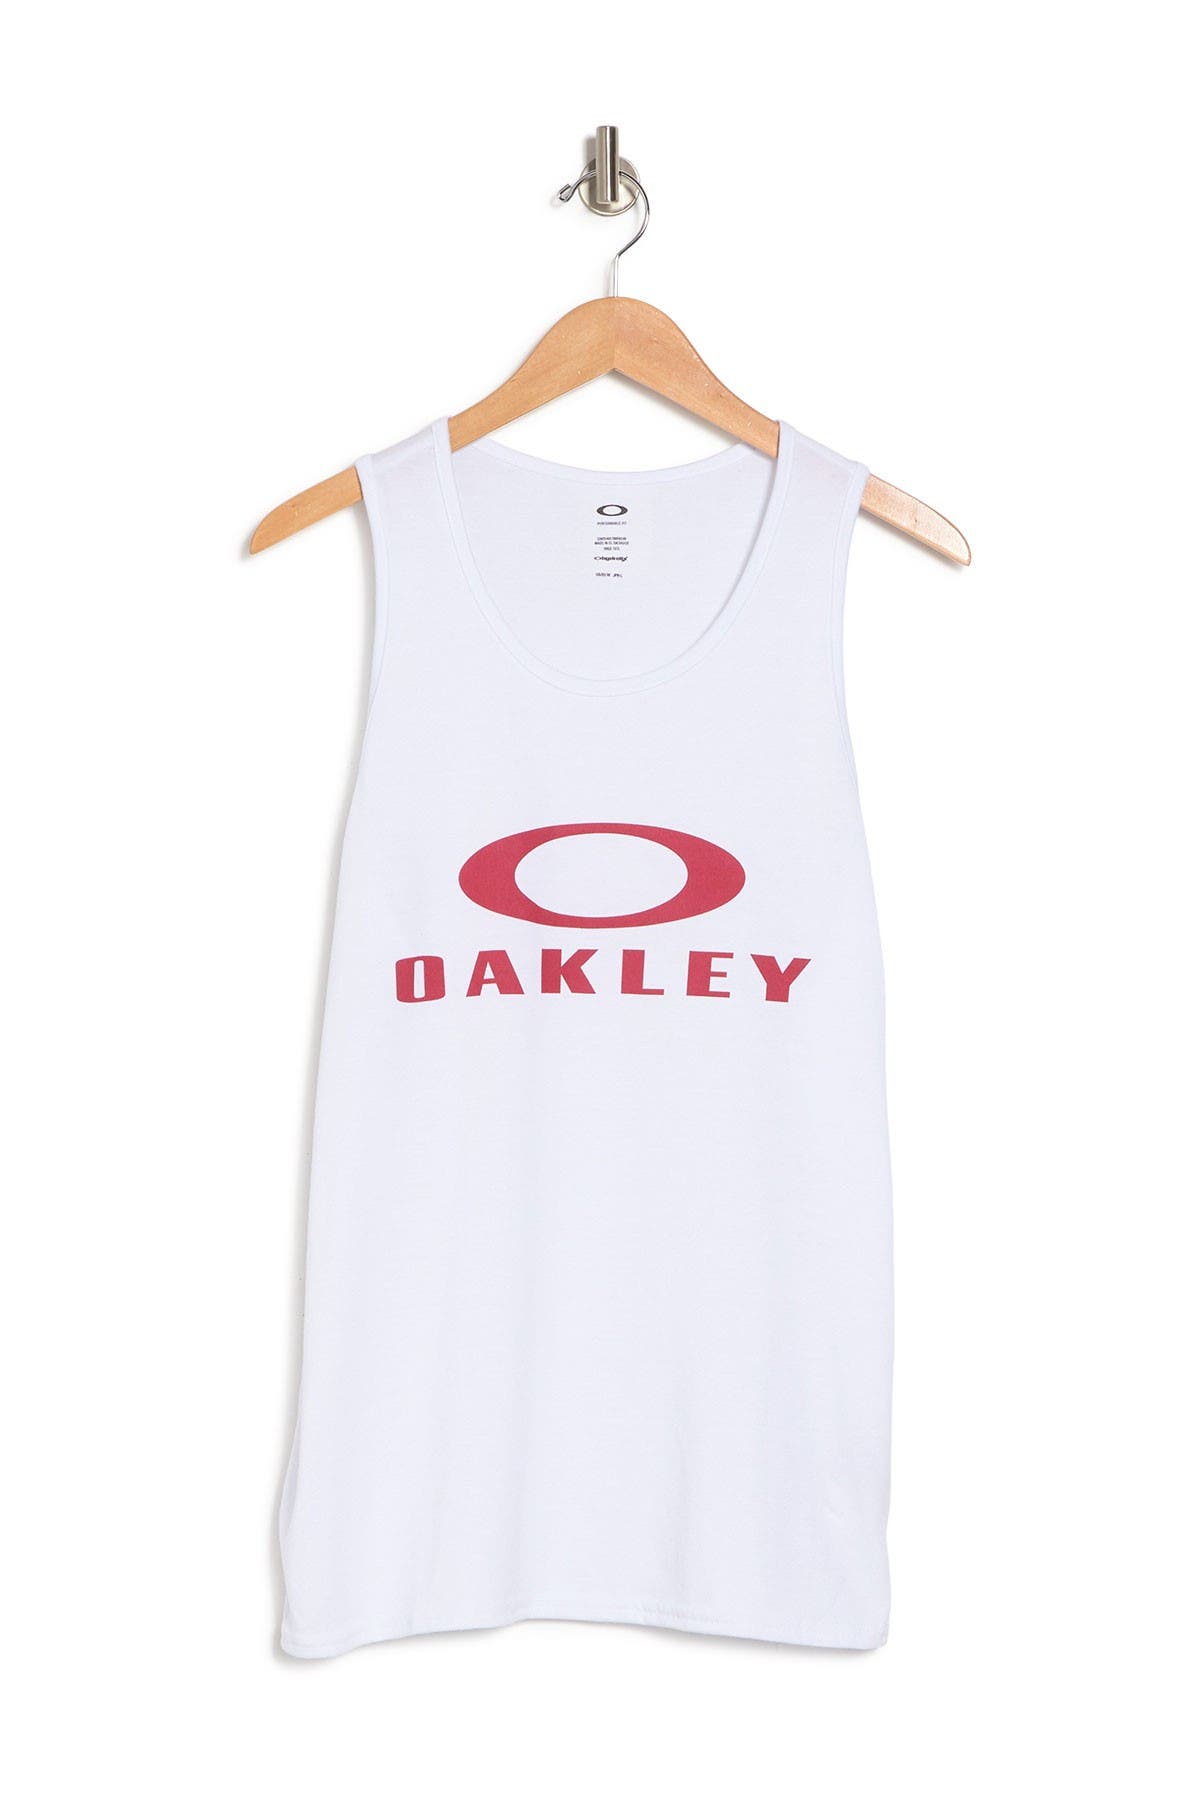 Oakley Bark Logo Print Tank In White